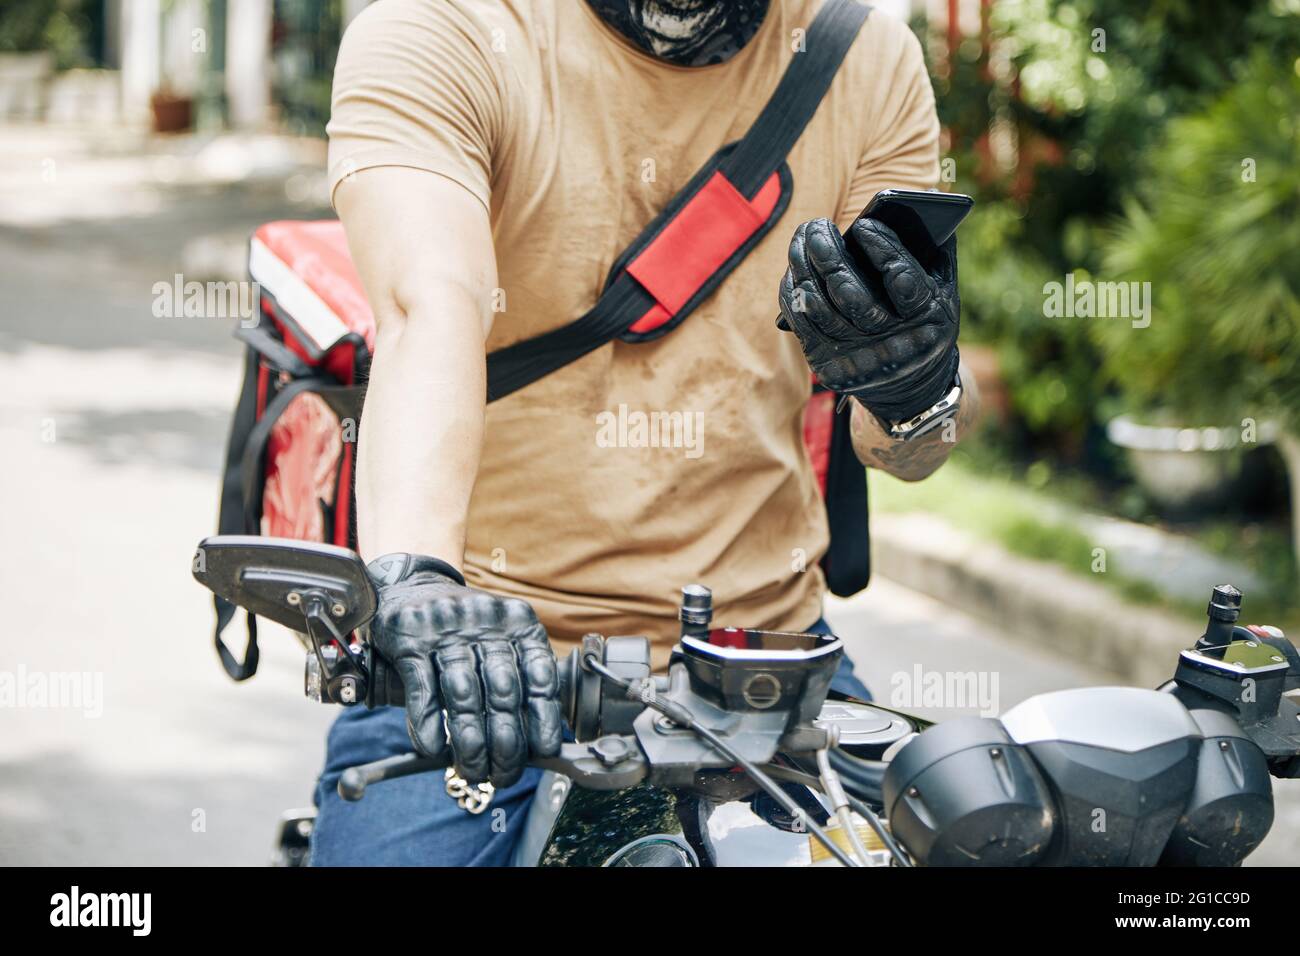 Zugeschnittenes Bild des Lieferers, der auf dem Motorrad sitzt und die mobile Anwendung auf neue Bestellung überprüft Stockfoto